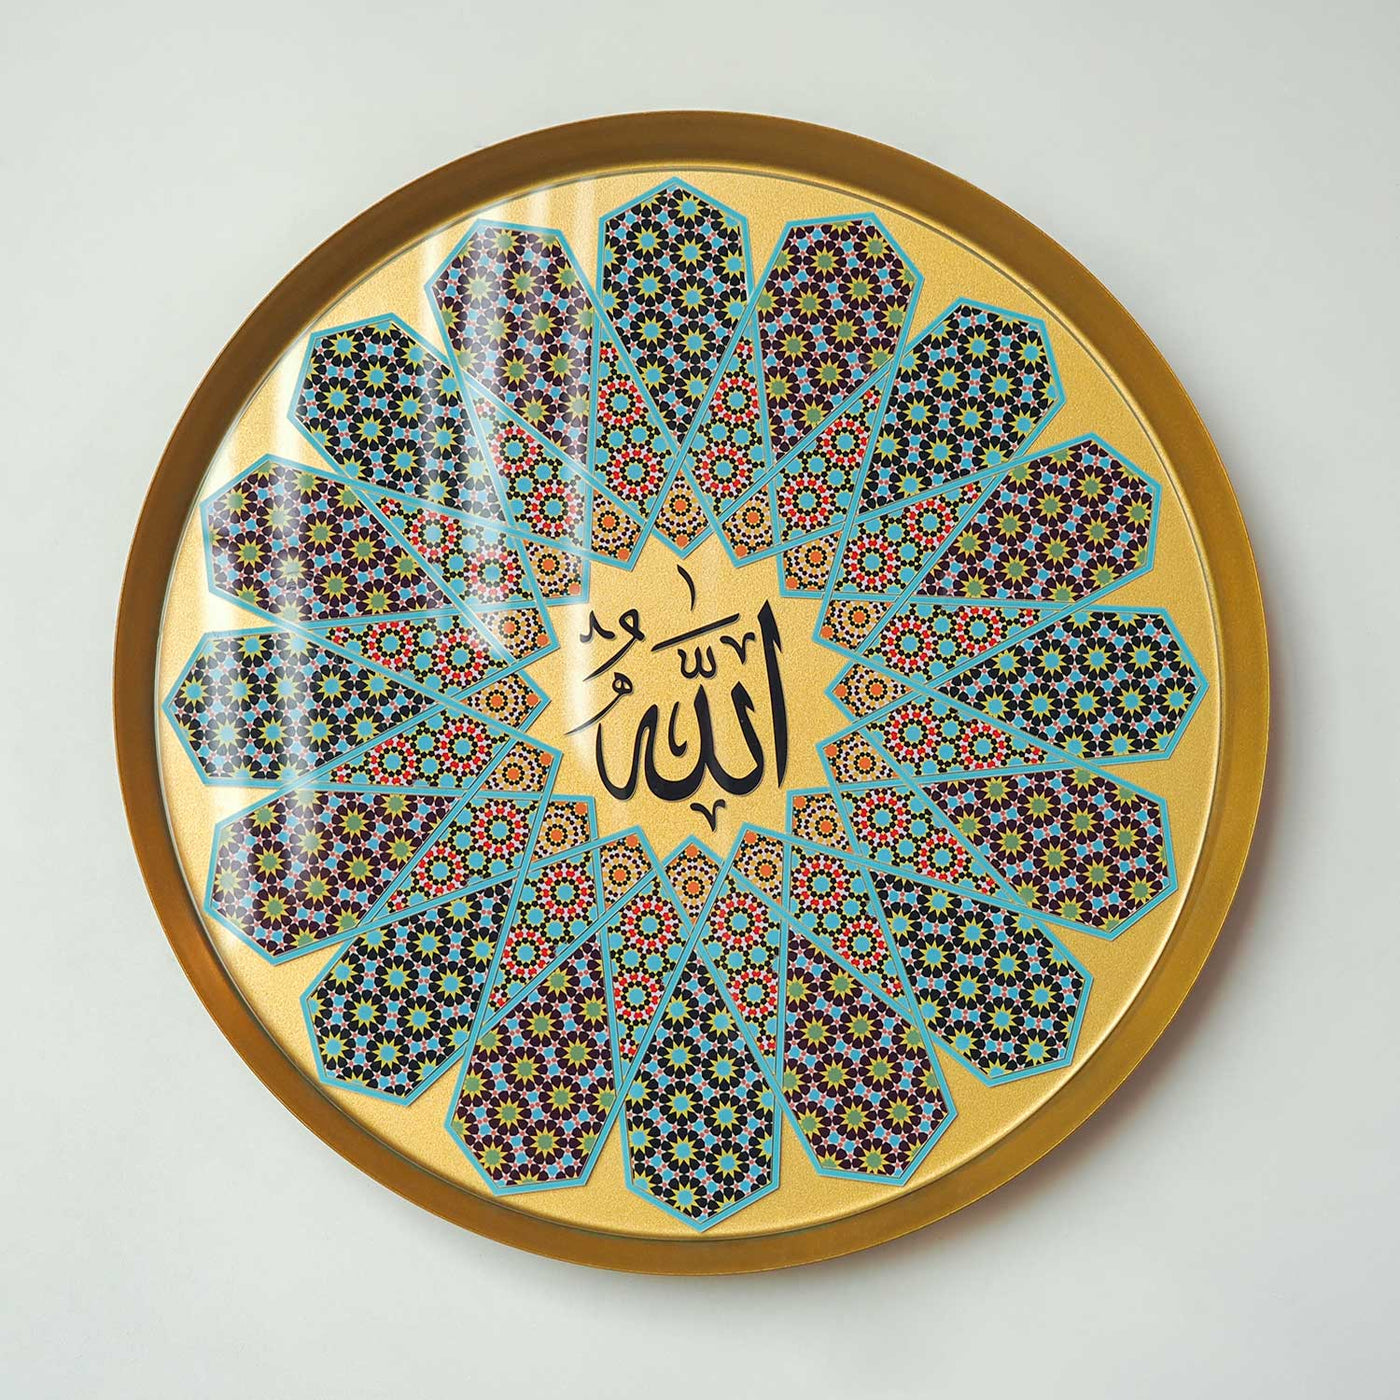 لوحة جدارية معدنية للفظ الجلاله ( الله ) - مغطاة بزجاج شبكي - WAM198